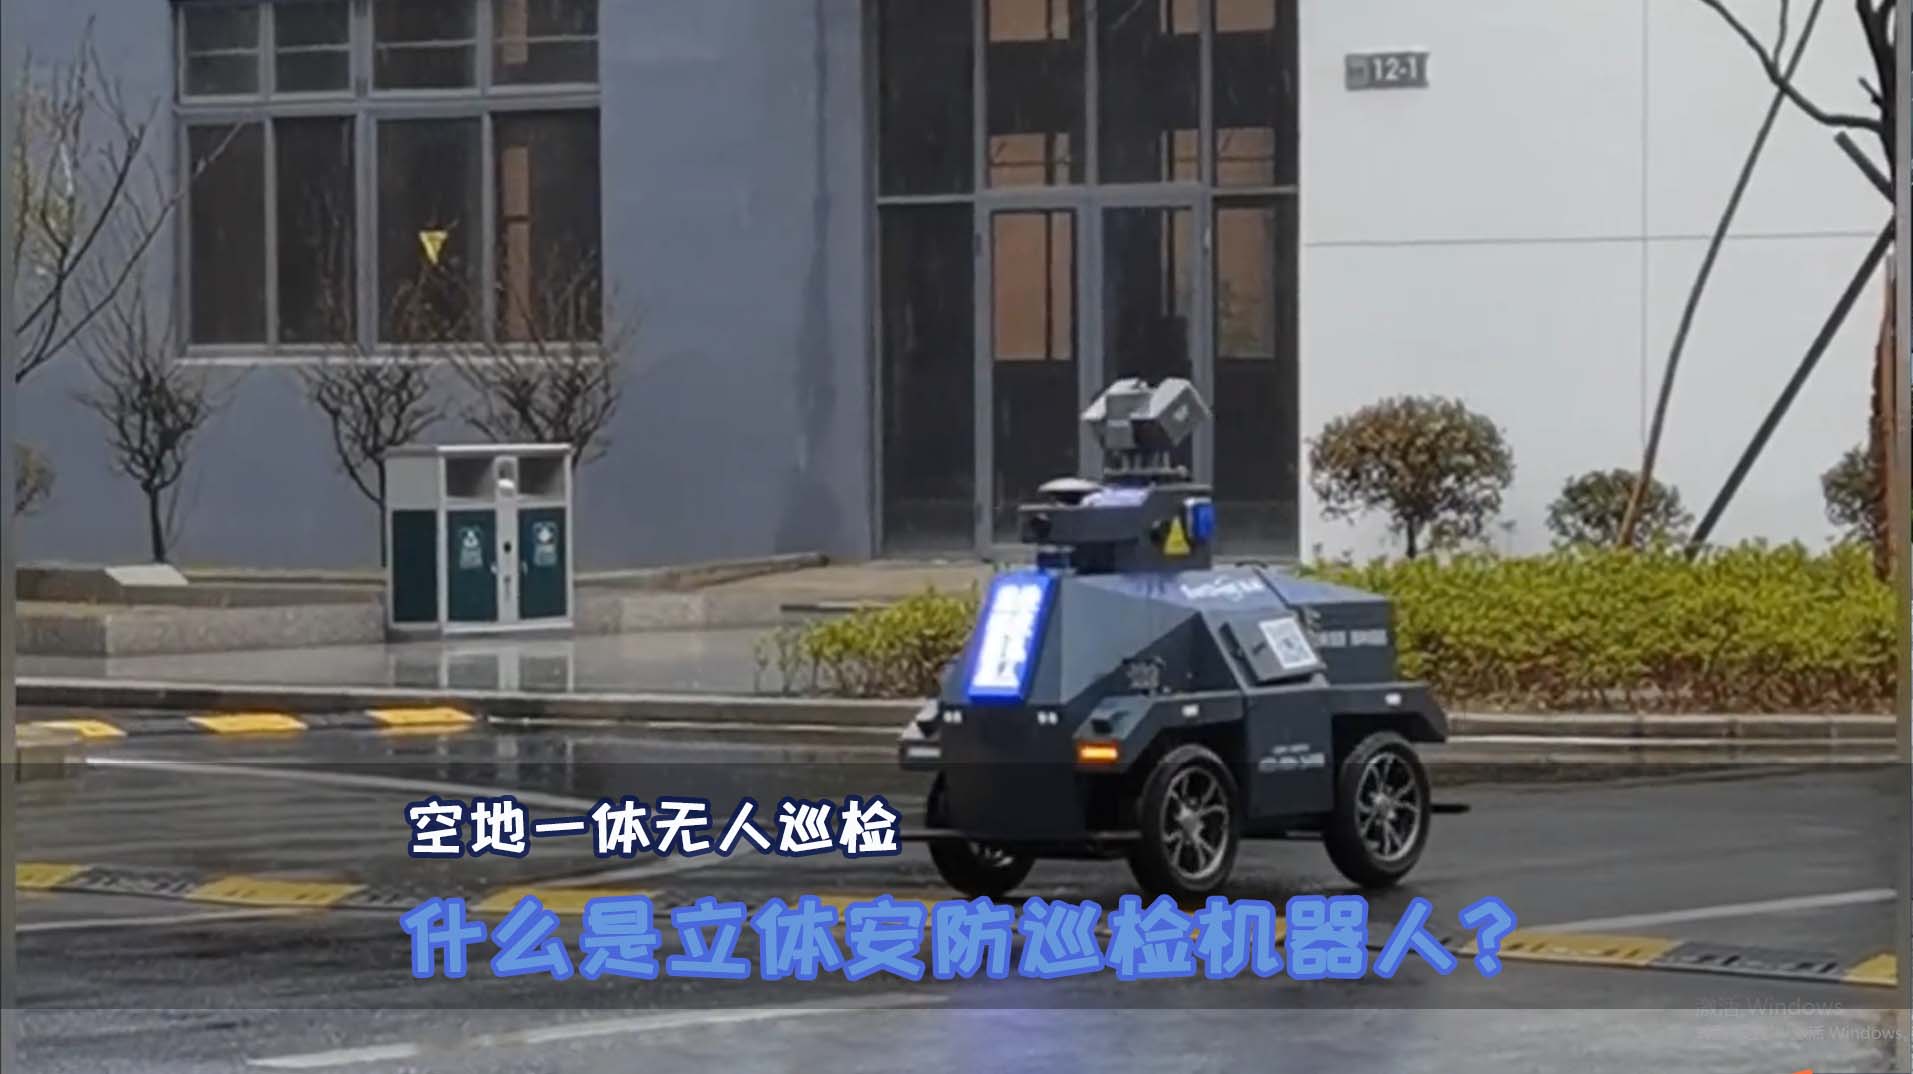 #立体安防#巡检机器人#智能底盘#智能移动平台#智能车#无人车 什么是立体安防巡检机器人？